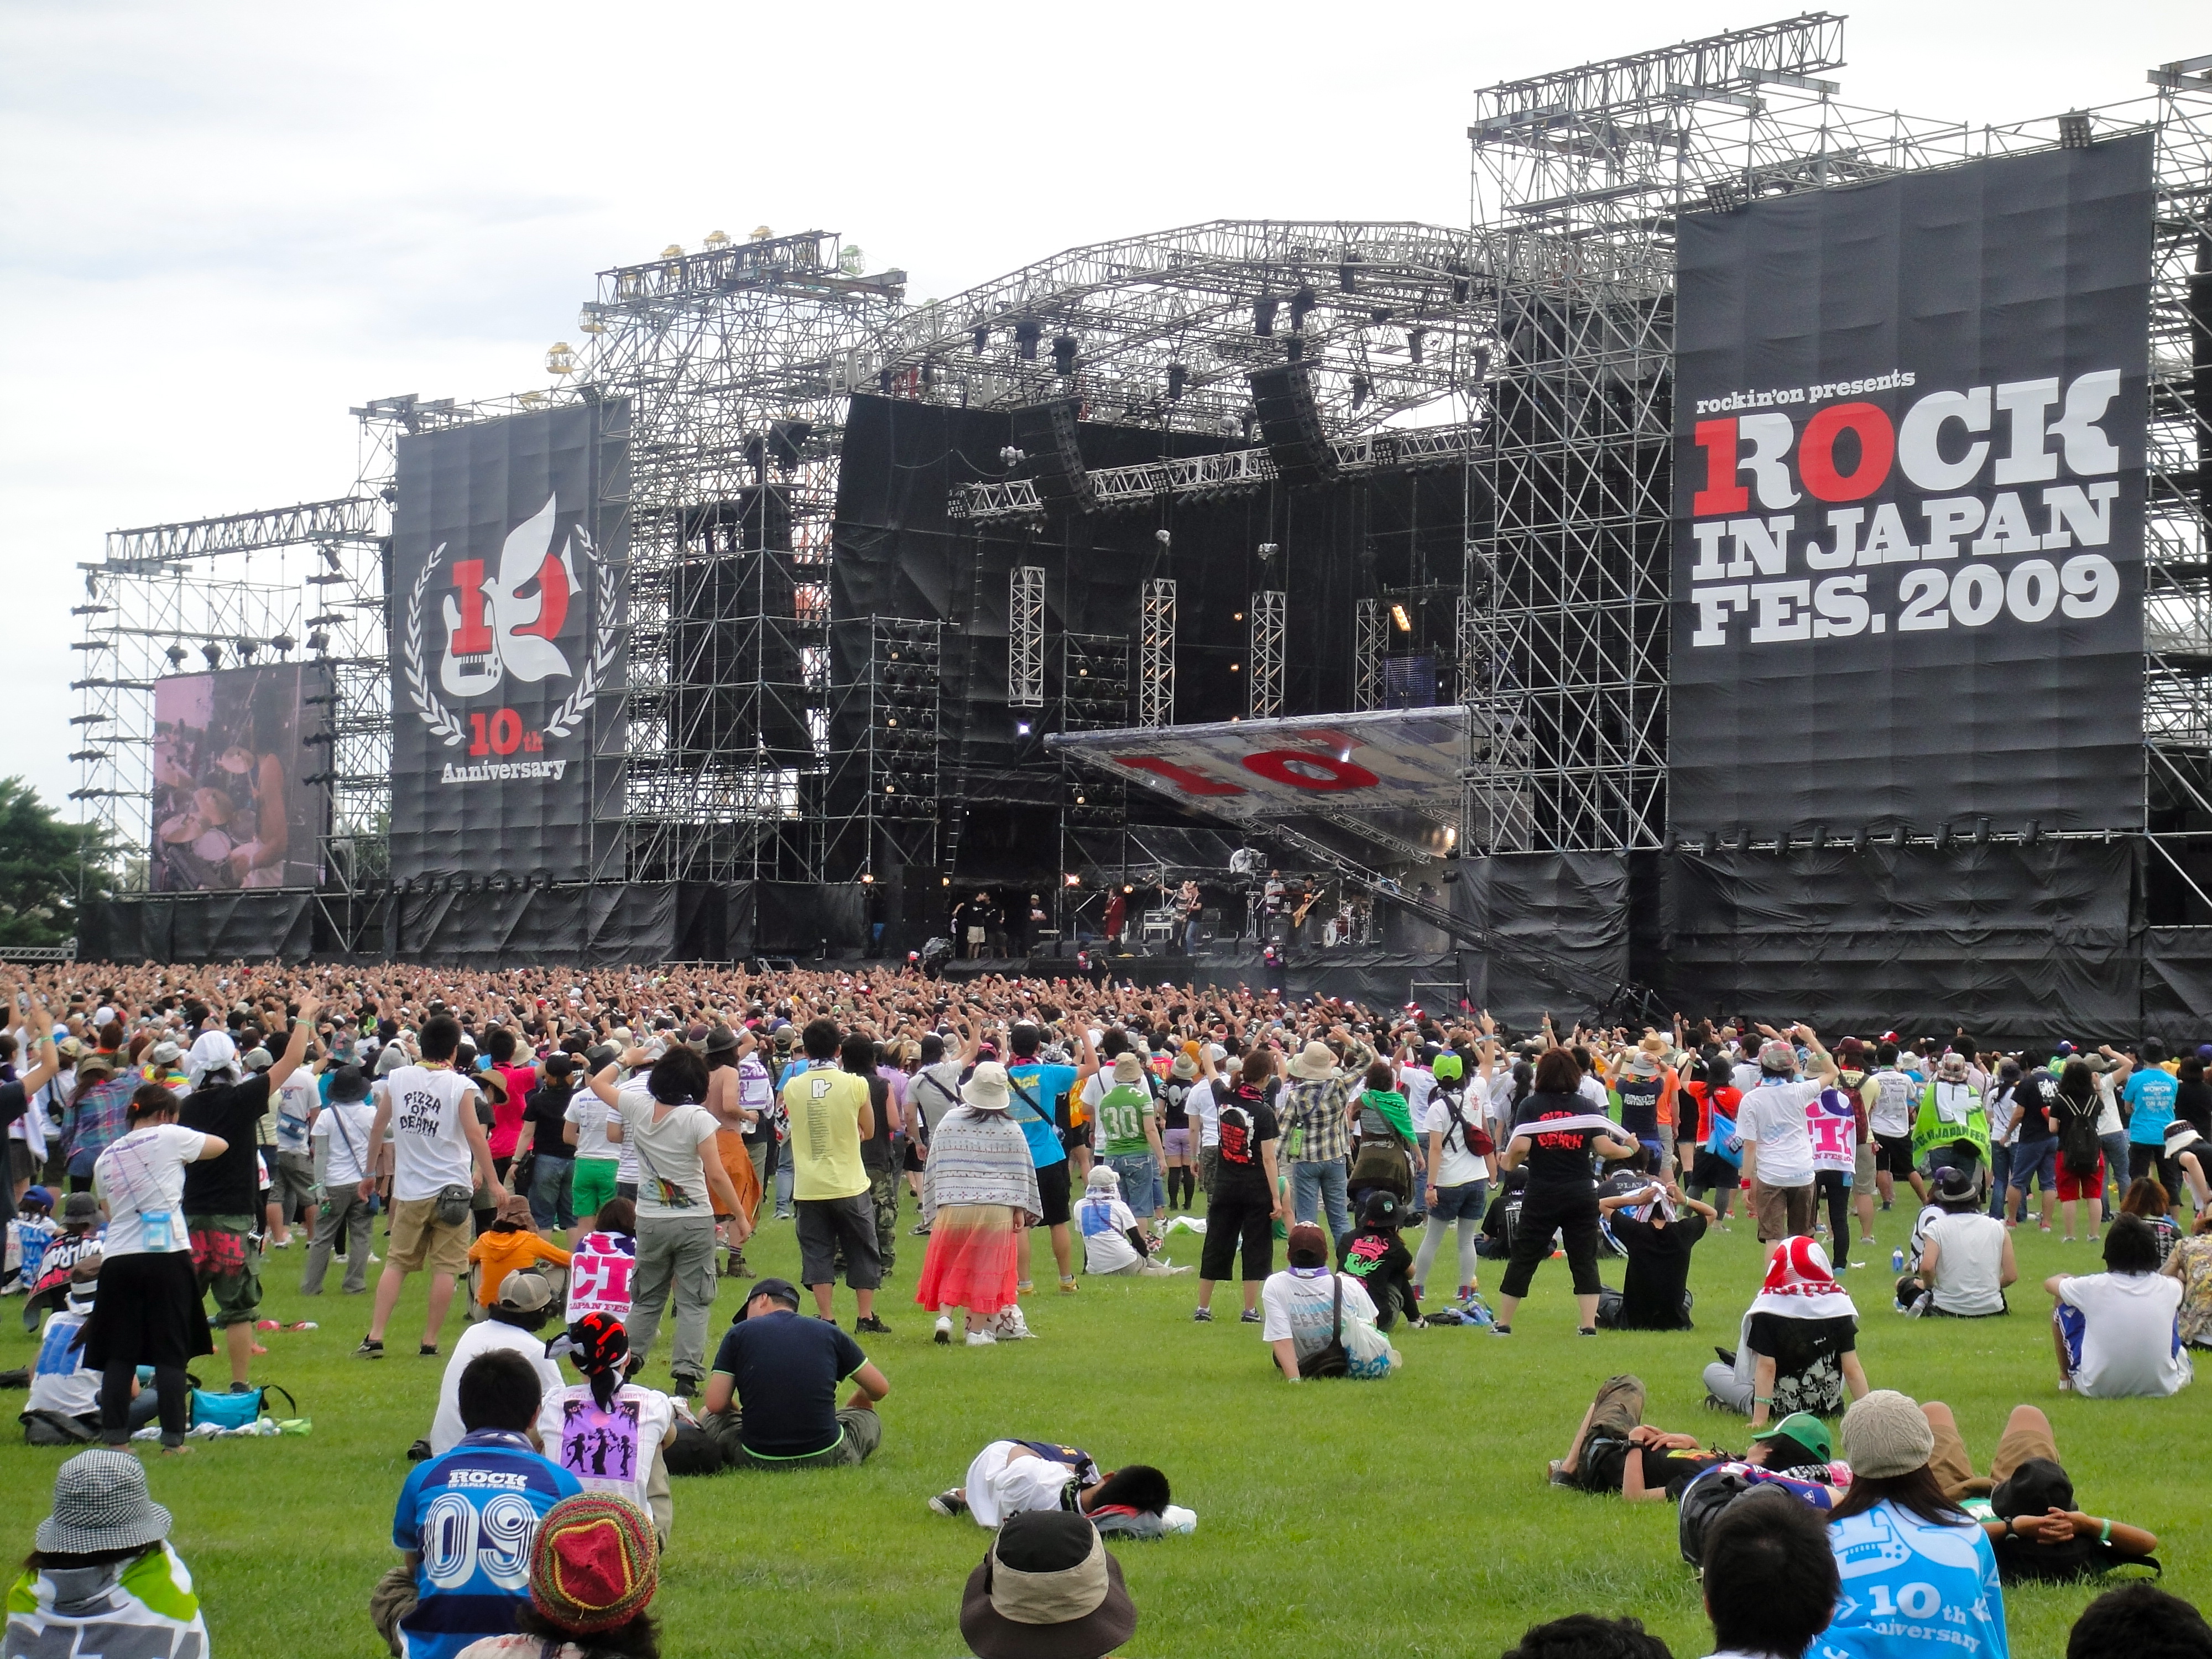 Rock in Japan Festival - Wikipedia